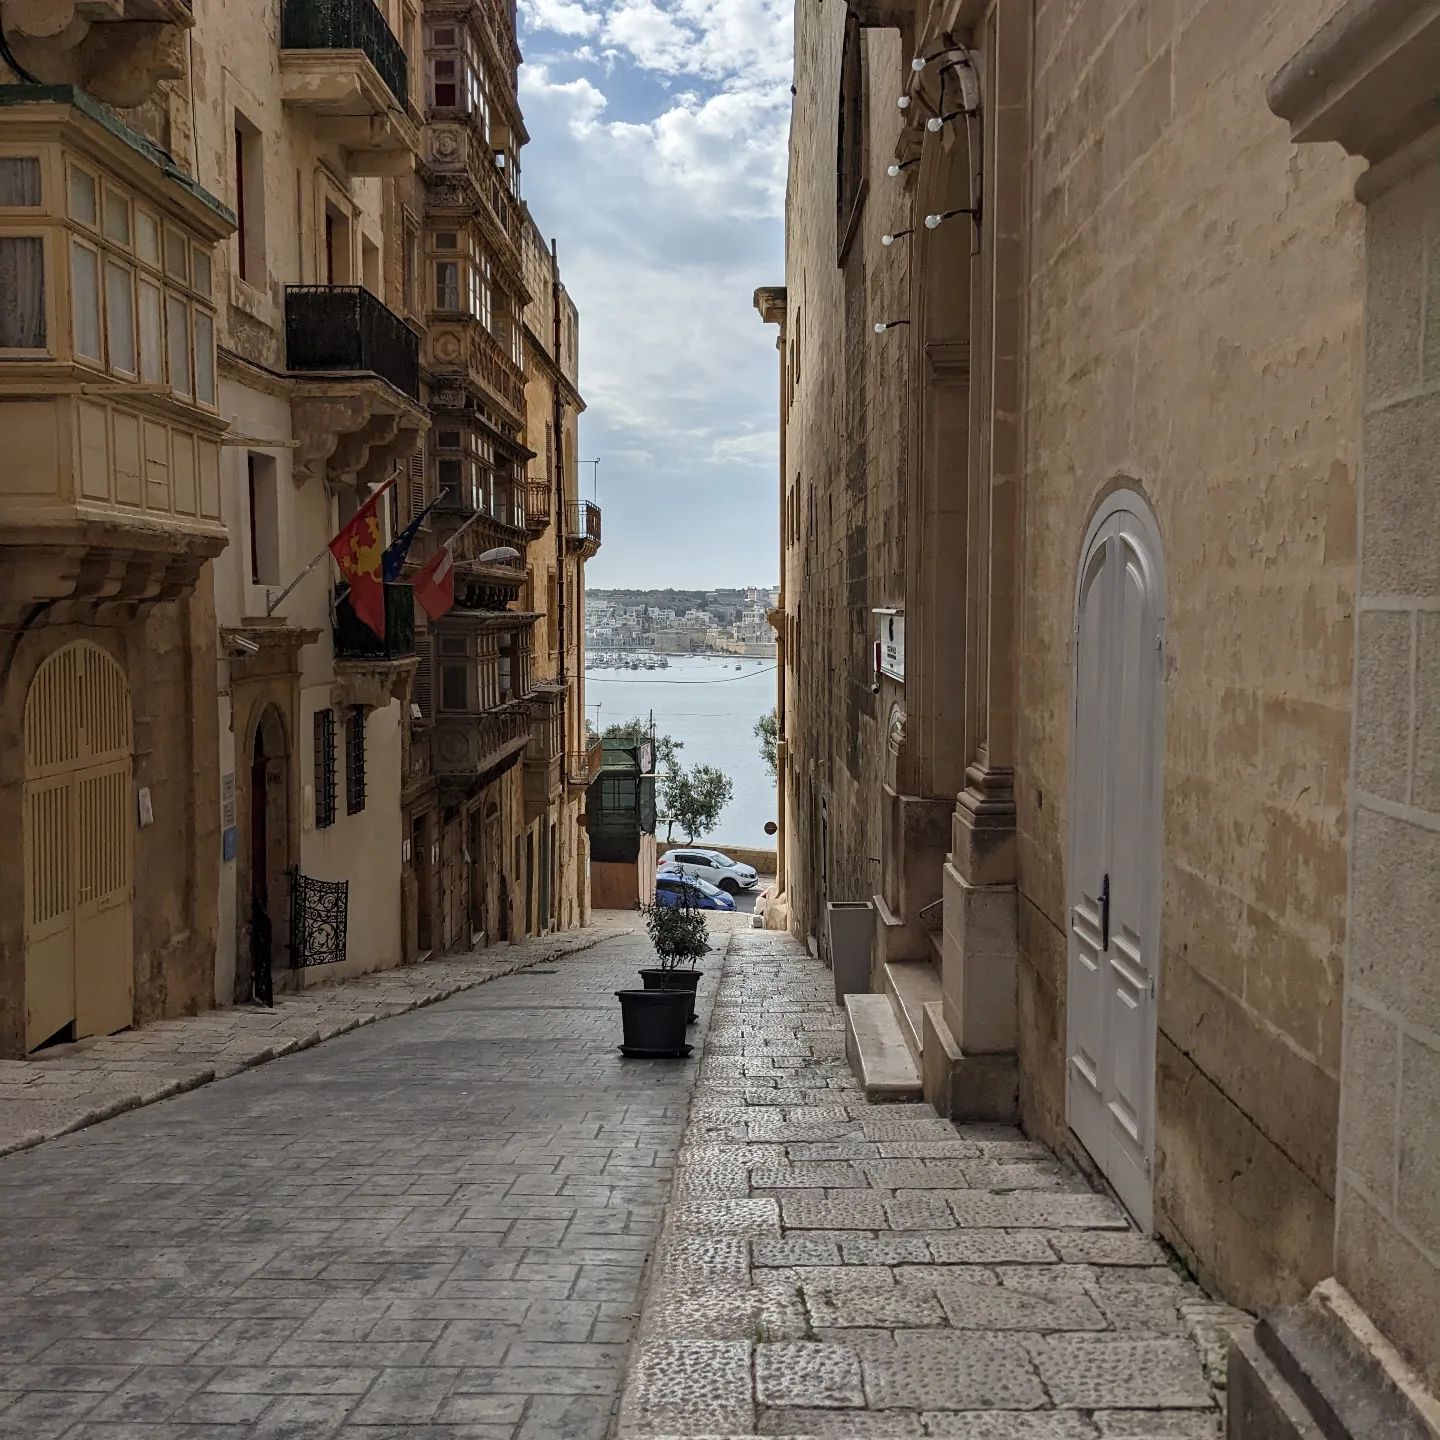 Der Blick morgens auf das Wasser. #Valletta #Malta #Meerwasser #Bucht #Reisen #Travel #Unterwegs #Morgens